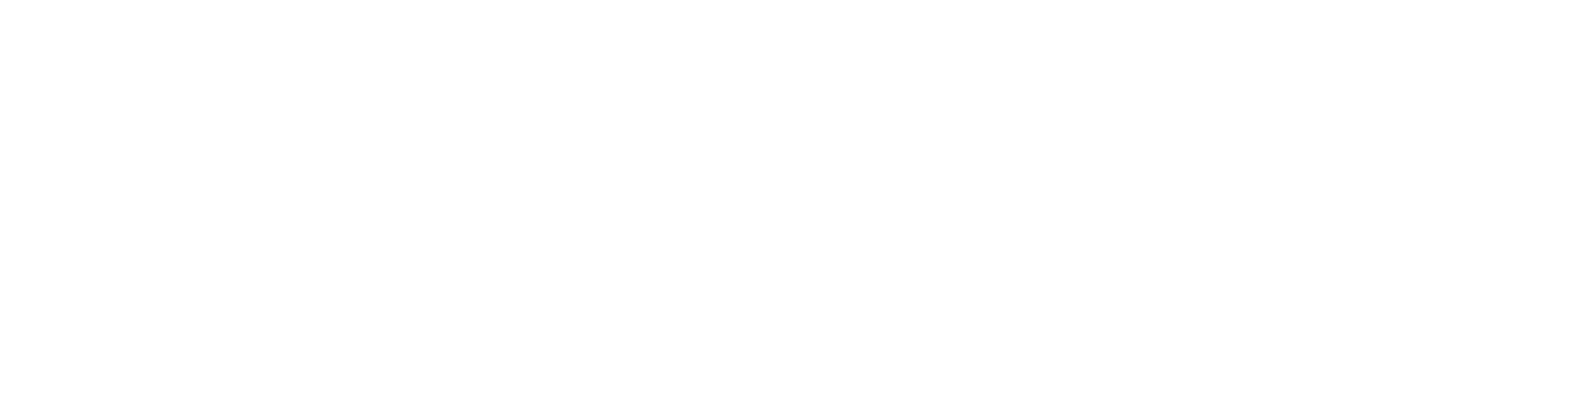 Essex Property Trust
 Logo groß für dunkle Hintergründe (transparentes PNG)